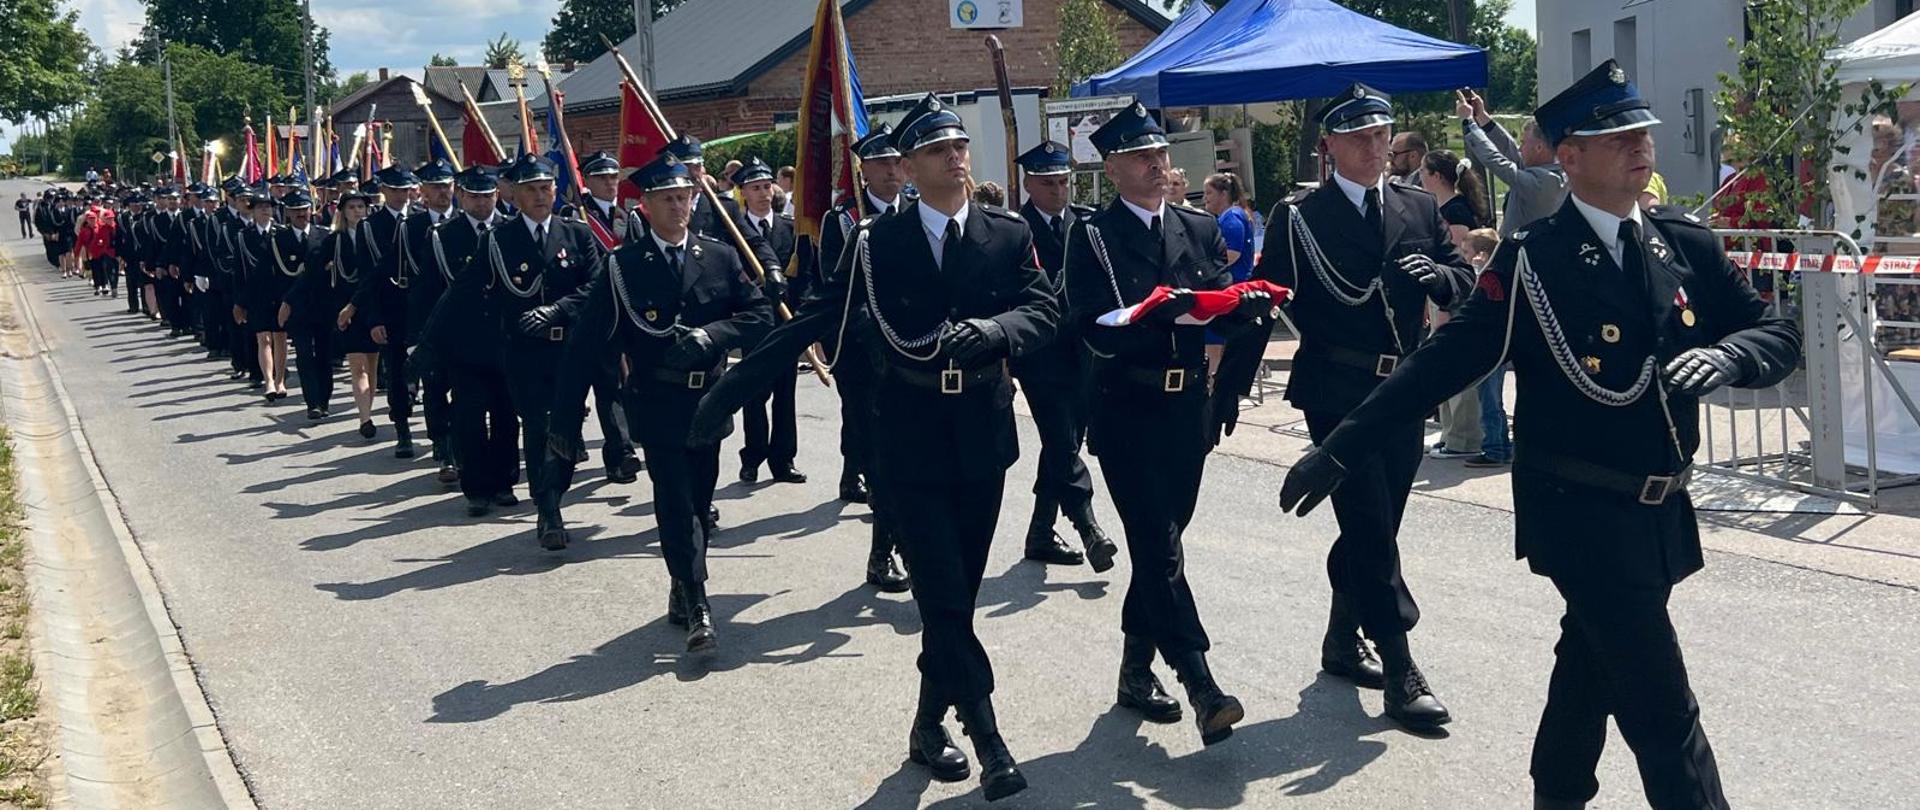 Uroczysty apel z okazji 100-lecia jednostki Ochotniczej Straży Pożarnej w Dzierzbach (powiat sokołowski) - na zdjęciu przemarsz strażaków w mundurach wyjściowych na plac przed remizę OSP